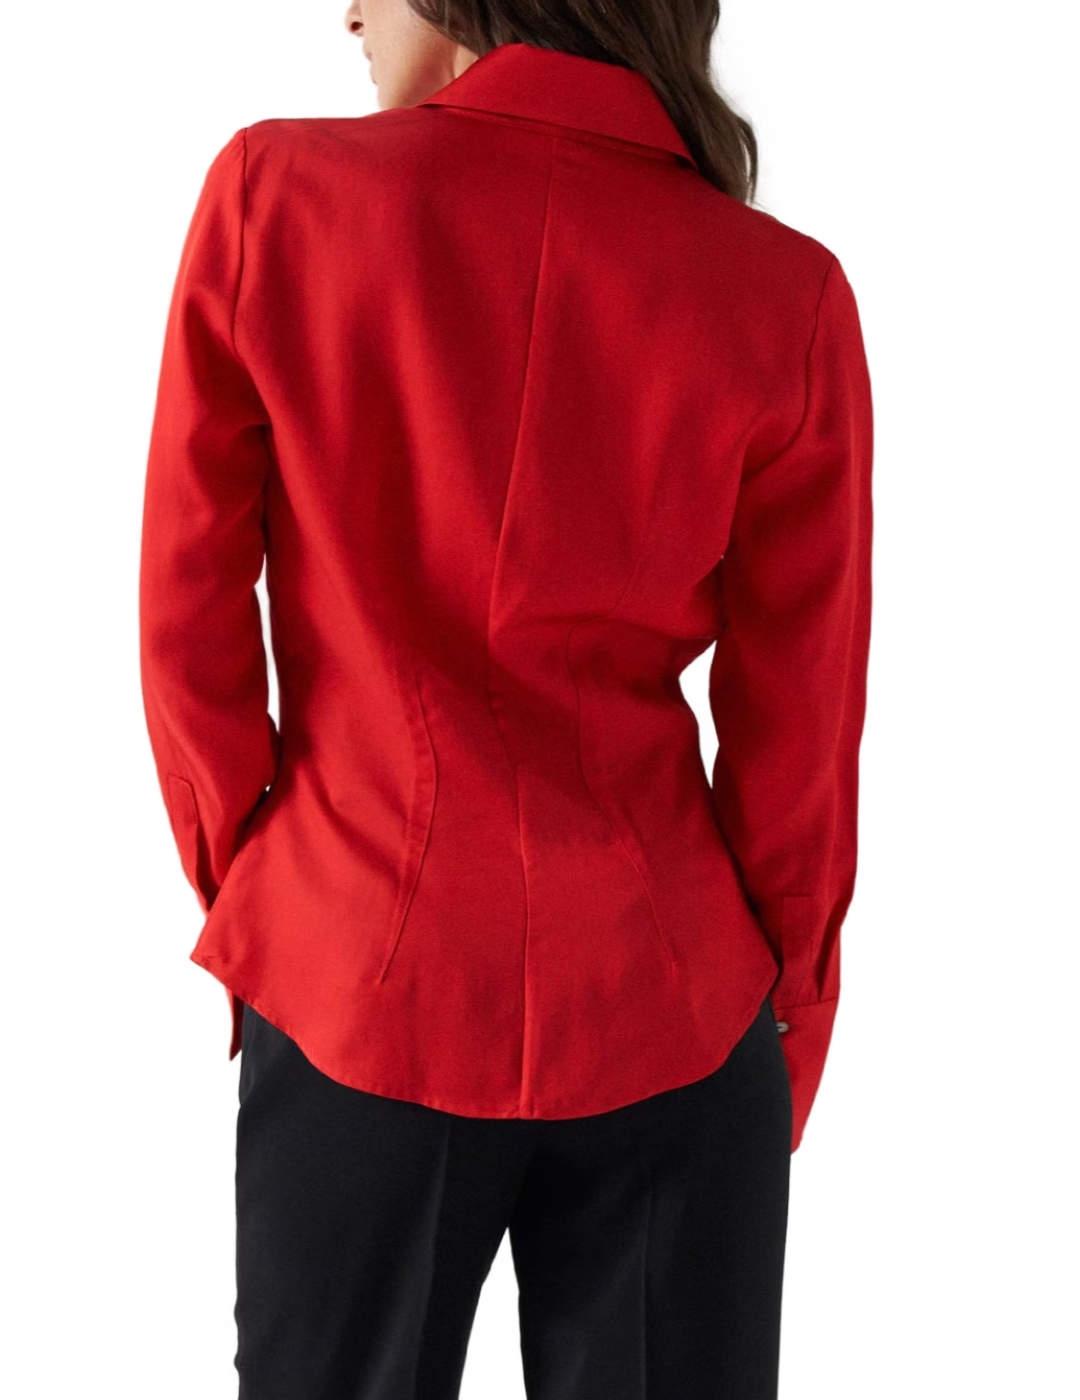 Camisa Salsa satinada en color rojo corte regular para mujer